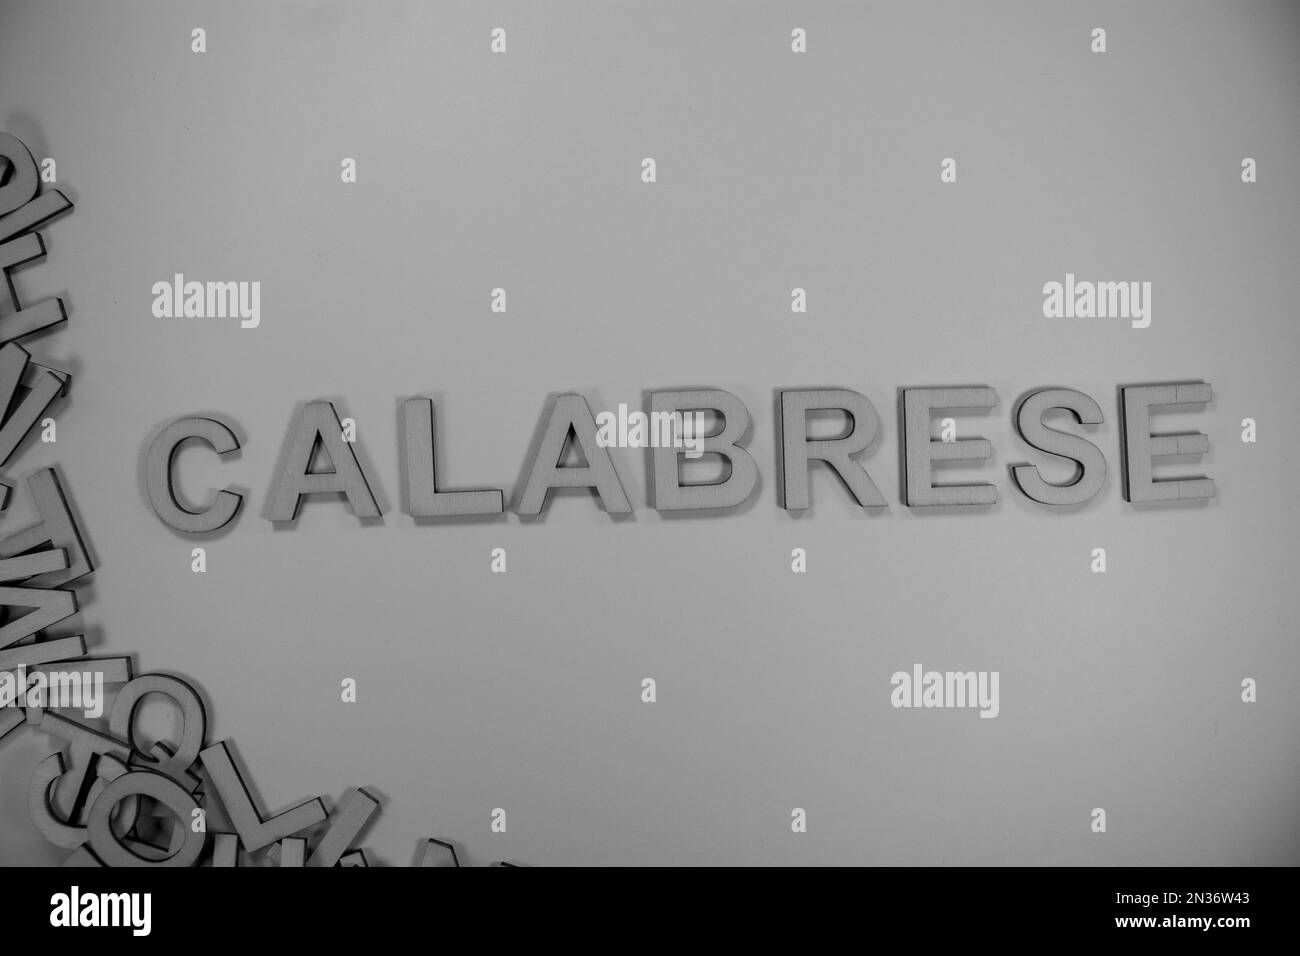 CALABRESE in hölzernen englischen Wörtern, Großbuchstaben, die aus einem Stapel schwarz-weißer Buchstaben herausfließen Stockfoto